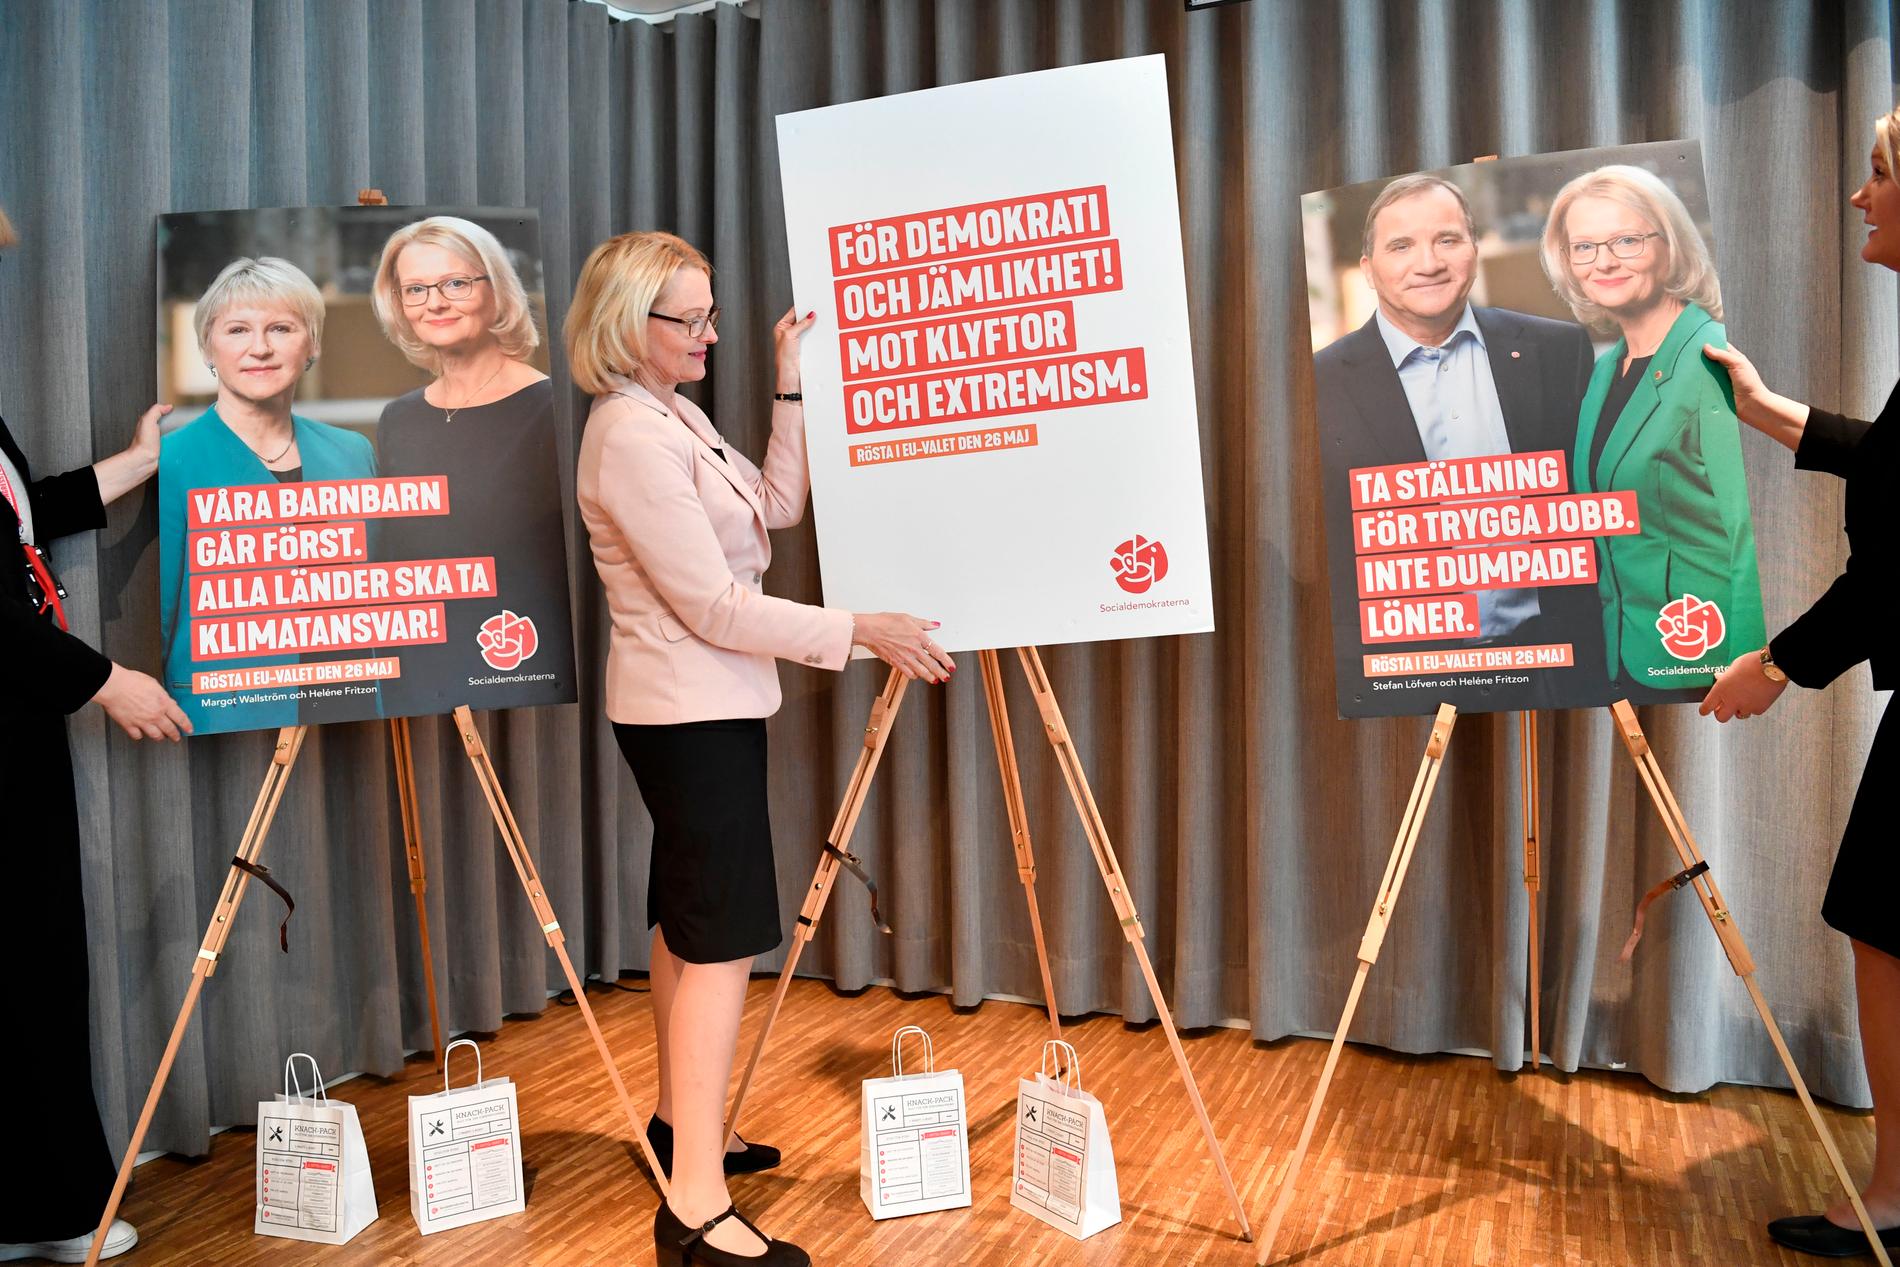 Klimat, värderingar och schyssta jobb är temat på S valaffischer. Utrikesminister Margot Wallström, statsminister Stefan Löfven och EU-kandidaten Heléne Fritzon är kampanjens ansikten.